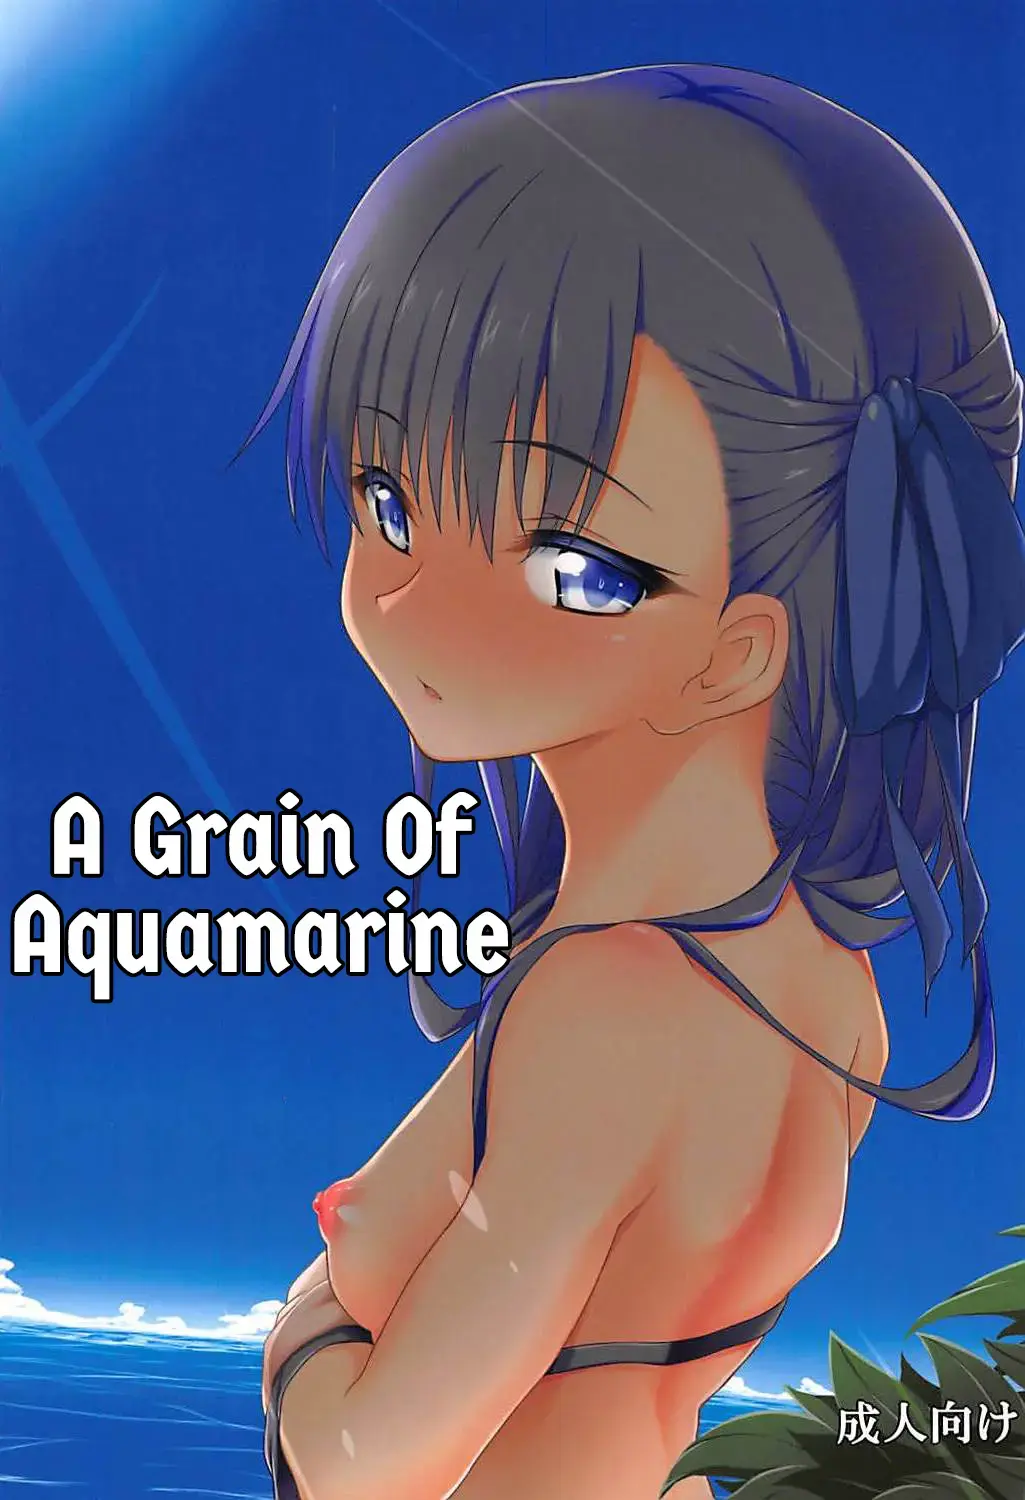 Read [Micchan] Hitotsubu no Aquamarine | A grain of Aquamarine - Fhentai.net